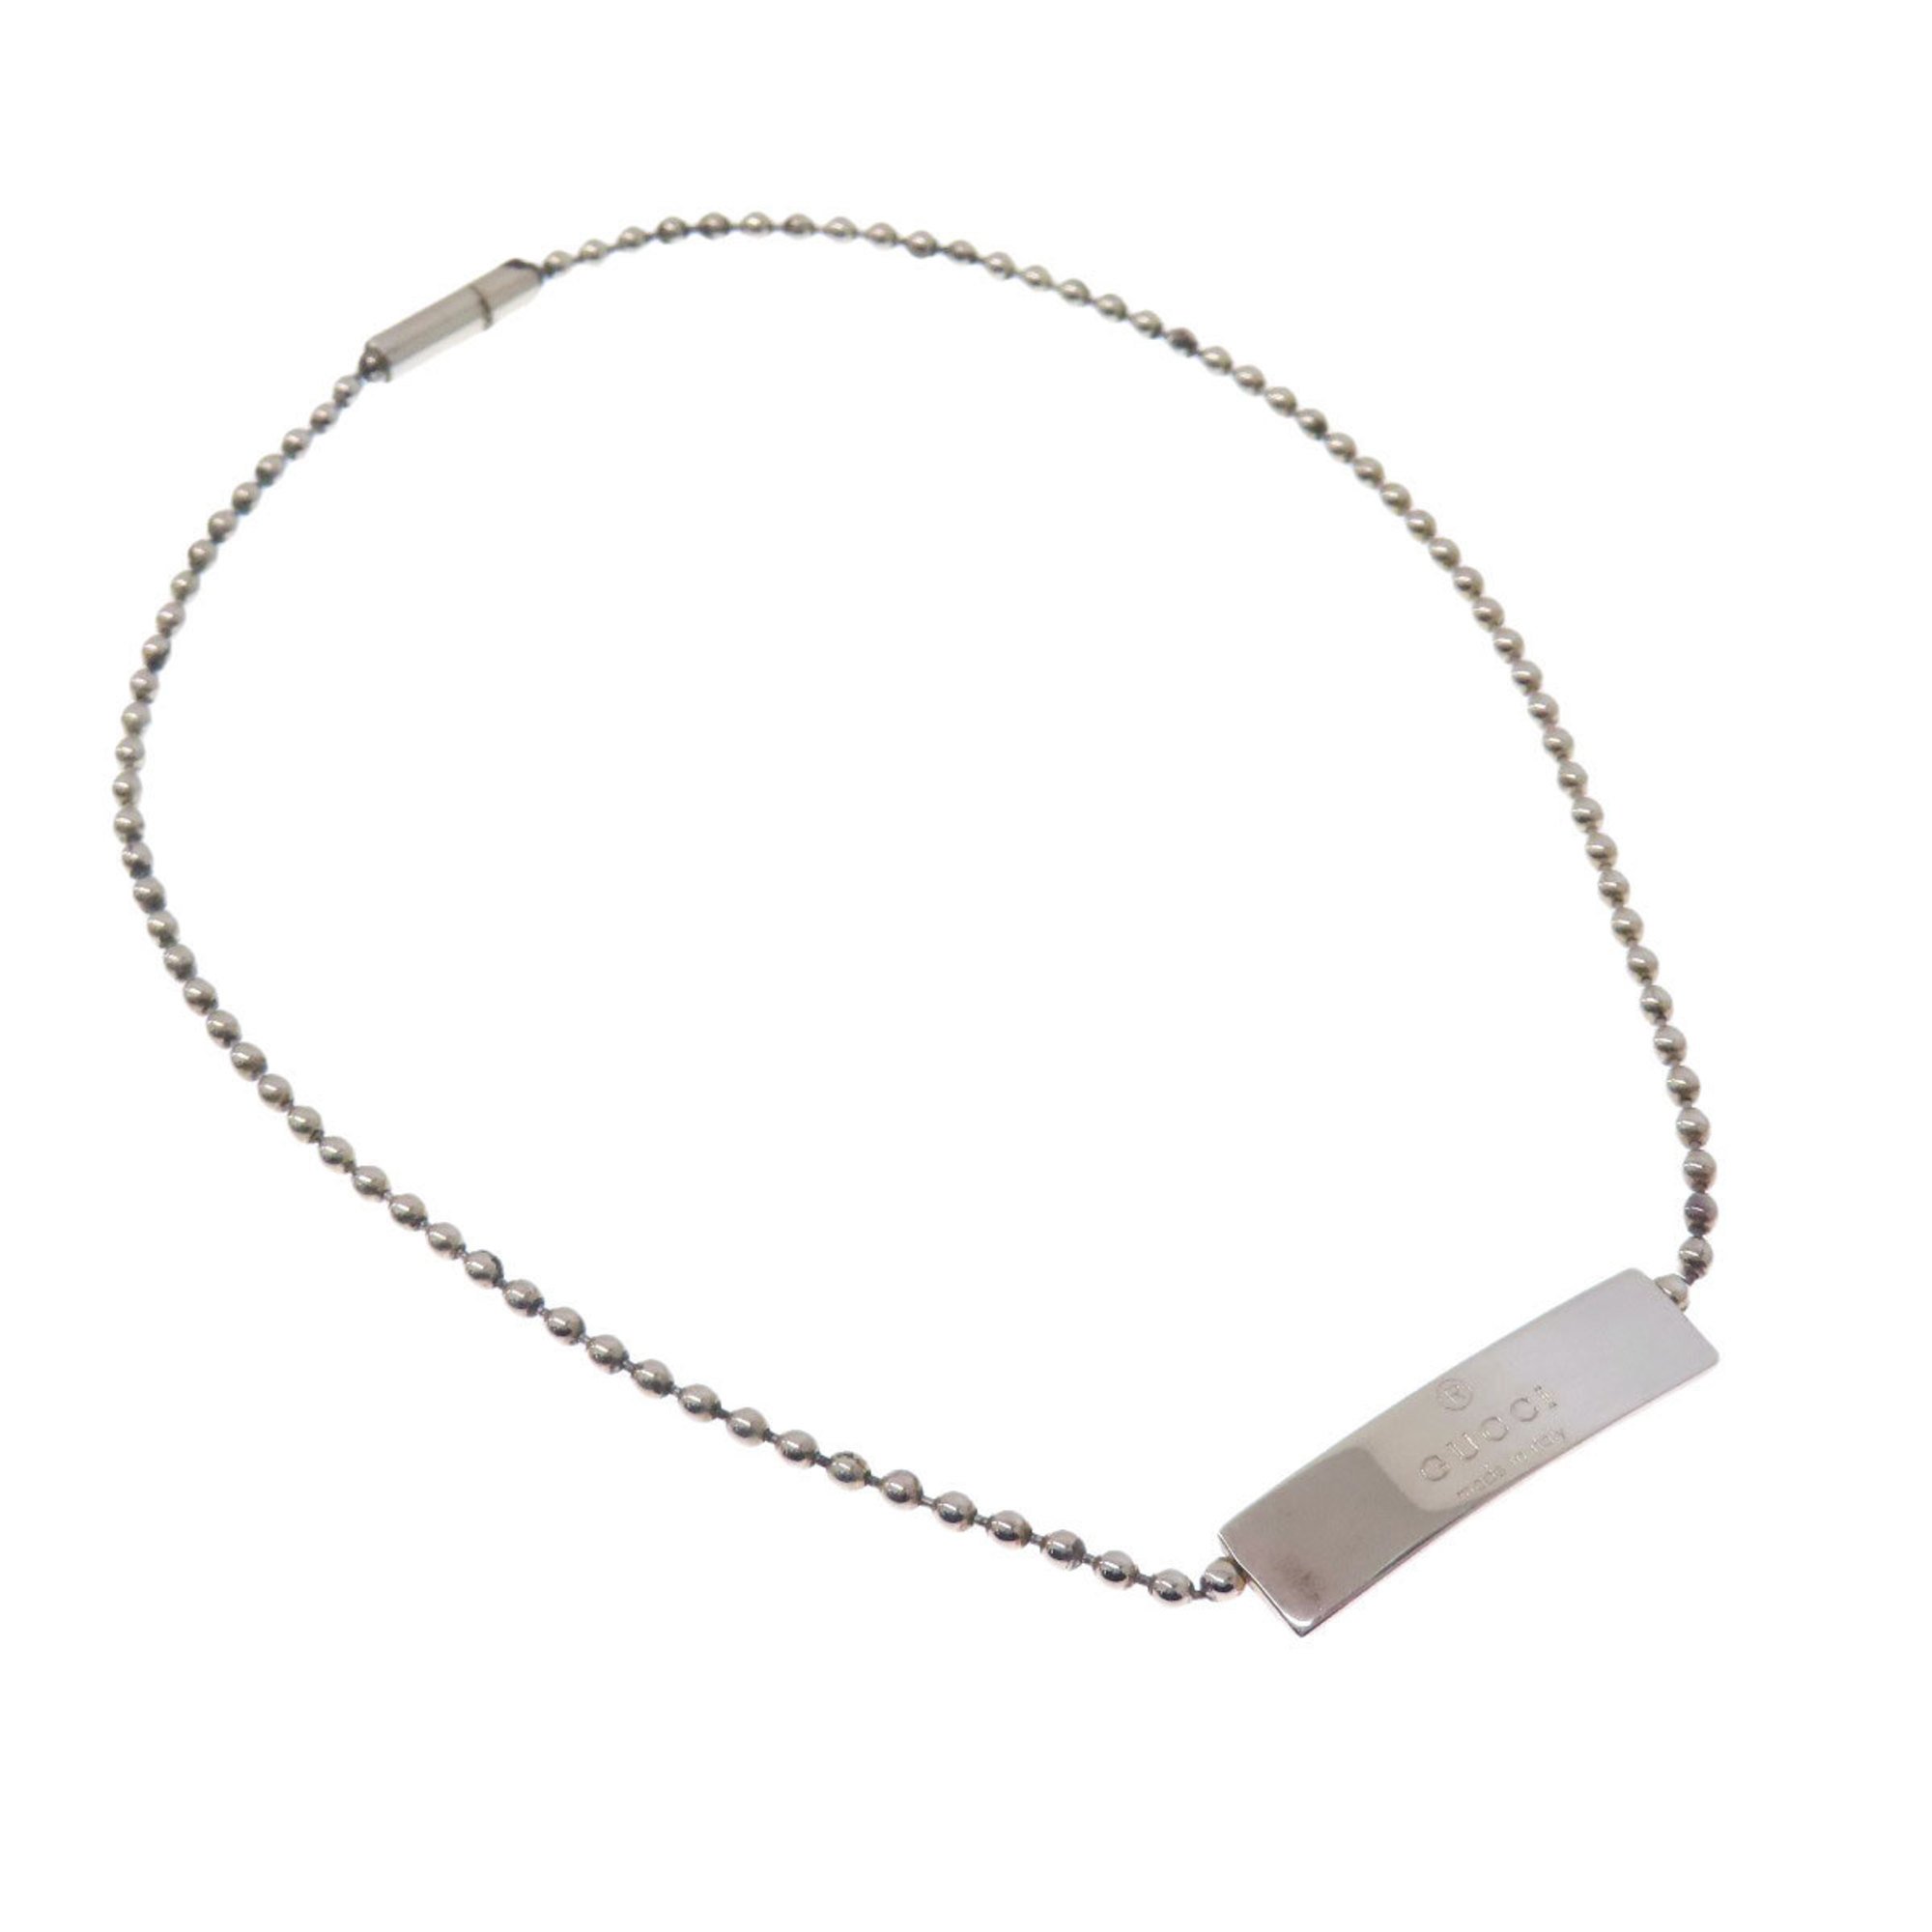 GUCCI Ball Chain Bracelet Silver Women's